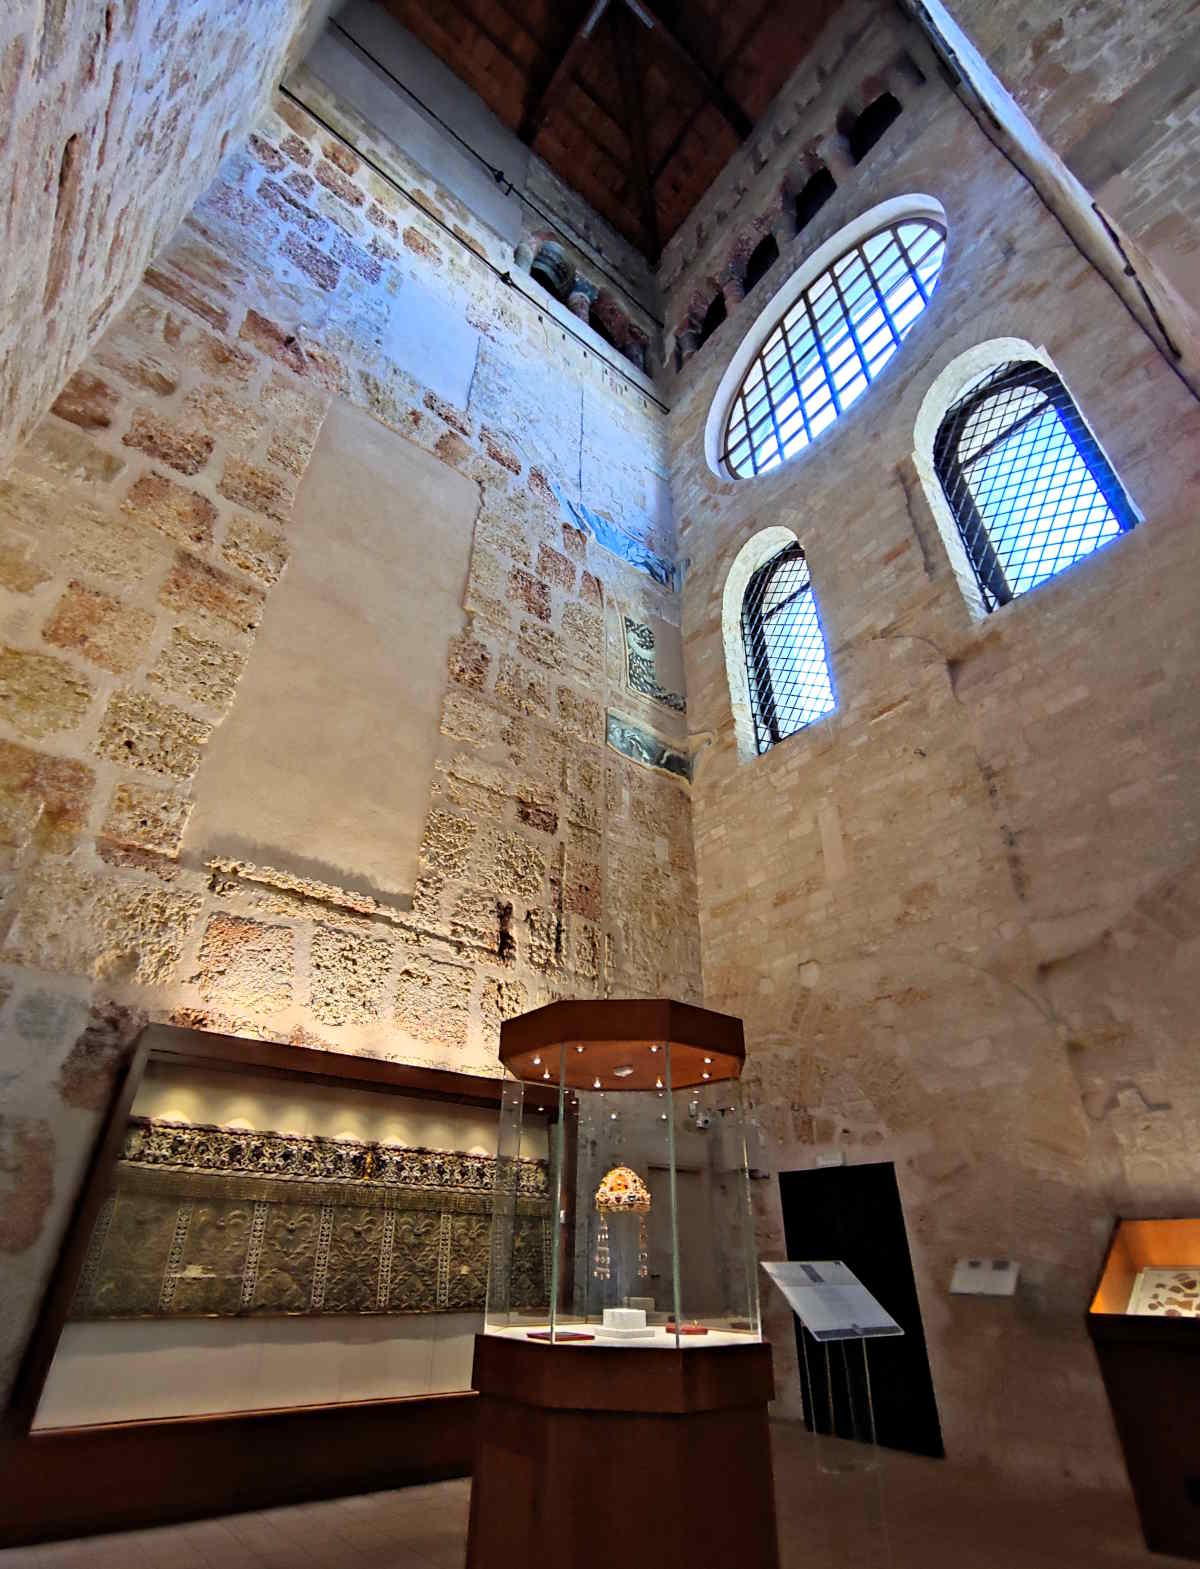 Luoghi imperdibili da vedere a Palermo: La monumentale "Aula del Tesoro" nella Cattedrale